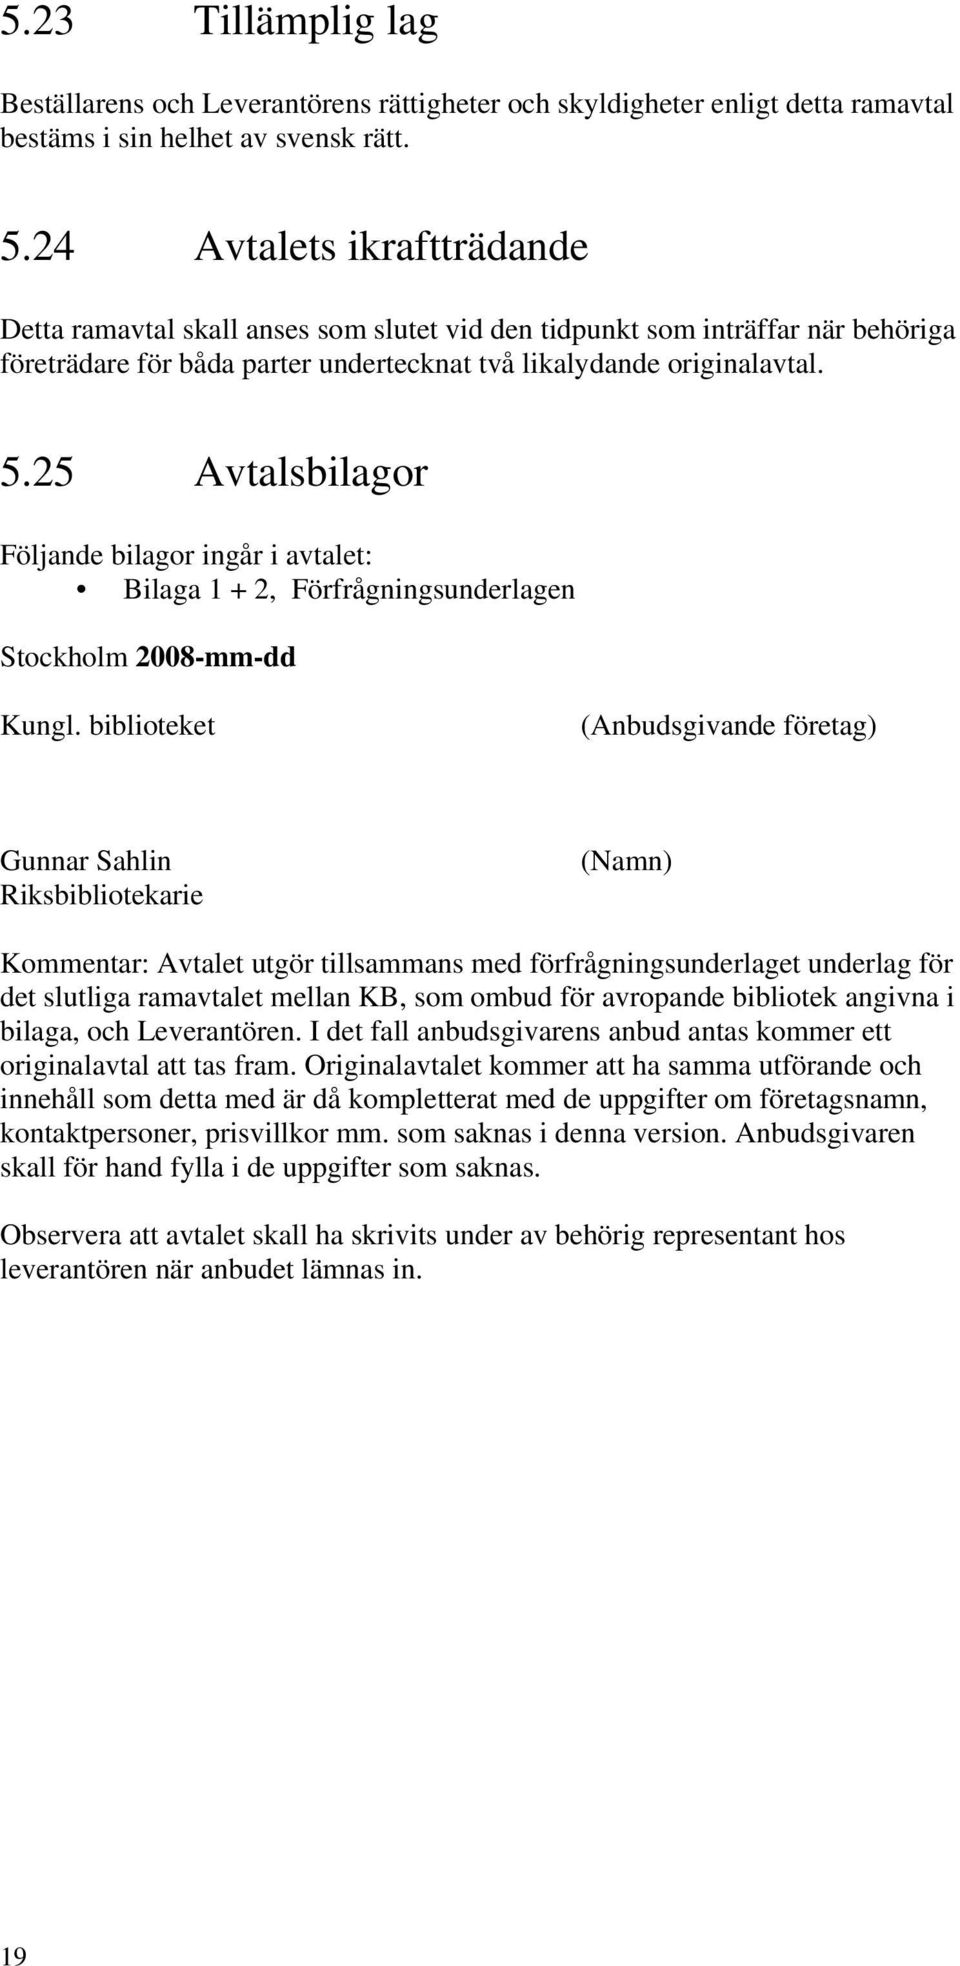 25 Avtalsbilagor Följande bilagor ingår i avtalet: Bilaga 1 + 2, Förfrågningsunderlagen Stockholm 2008-mm-dd Kungl.